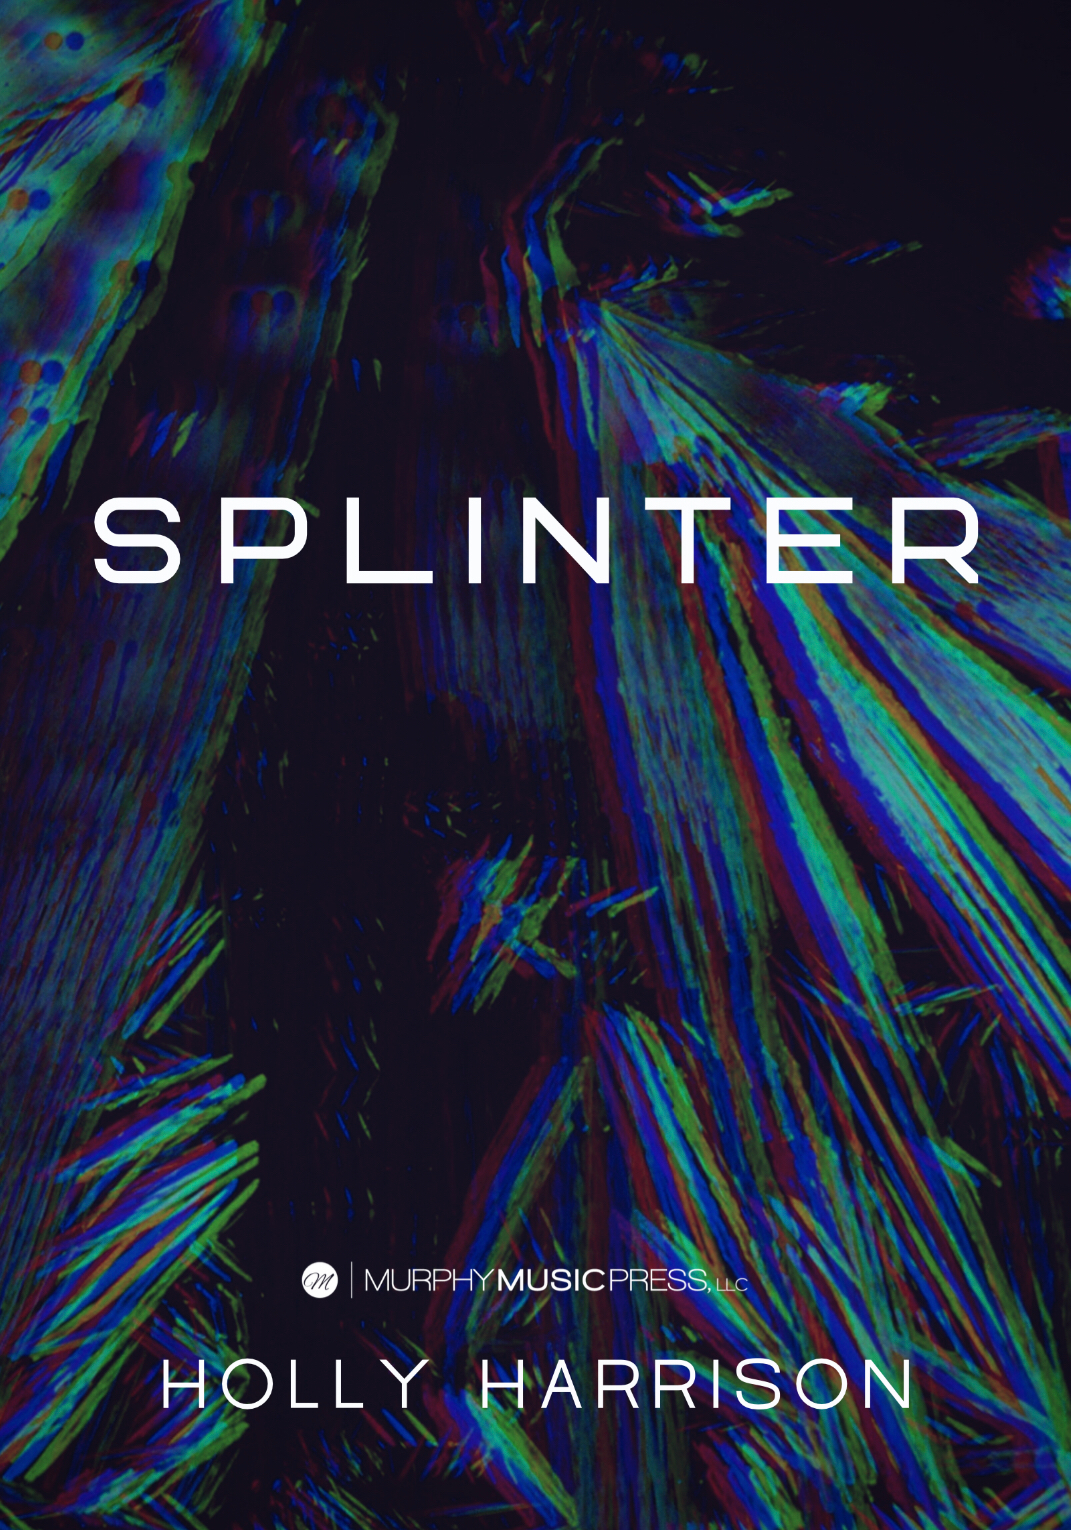 Splinter (Score Only) by Holly Harrison